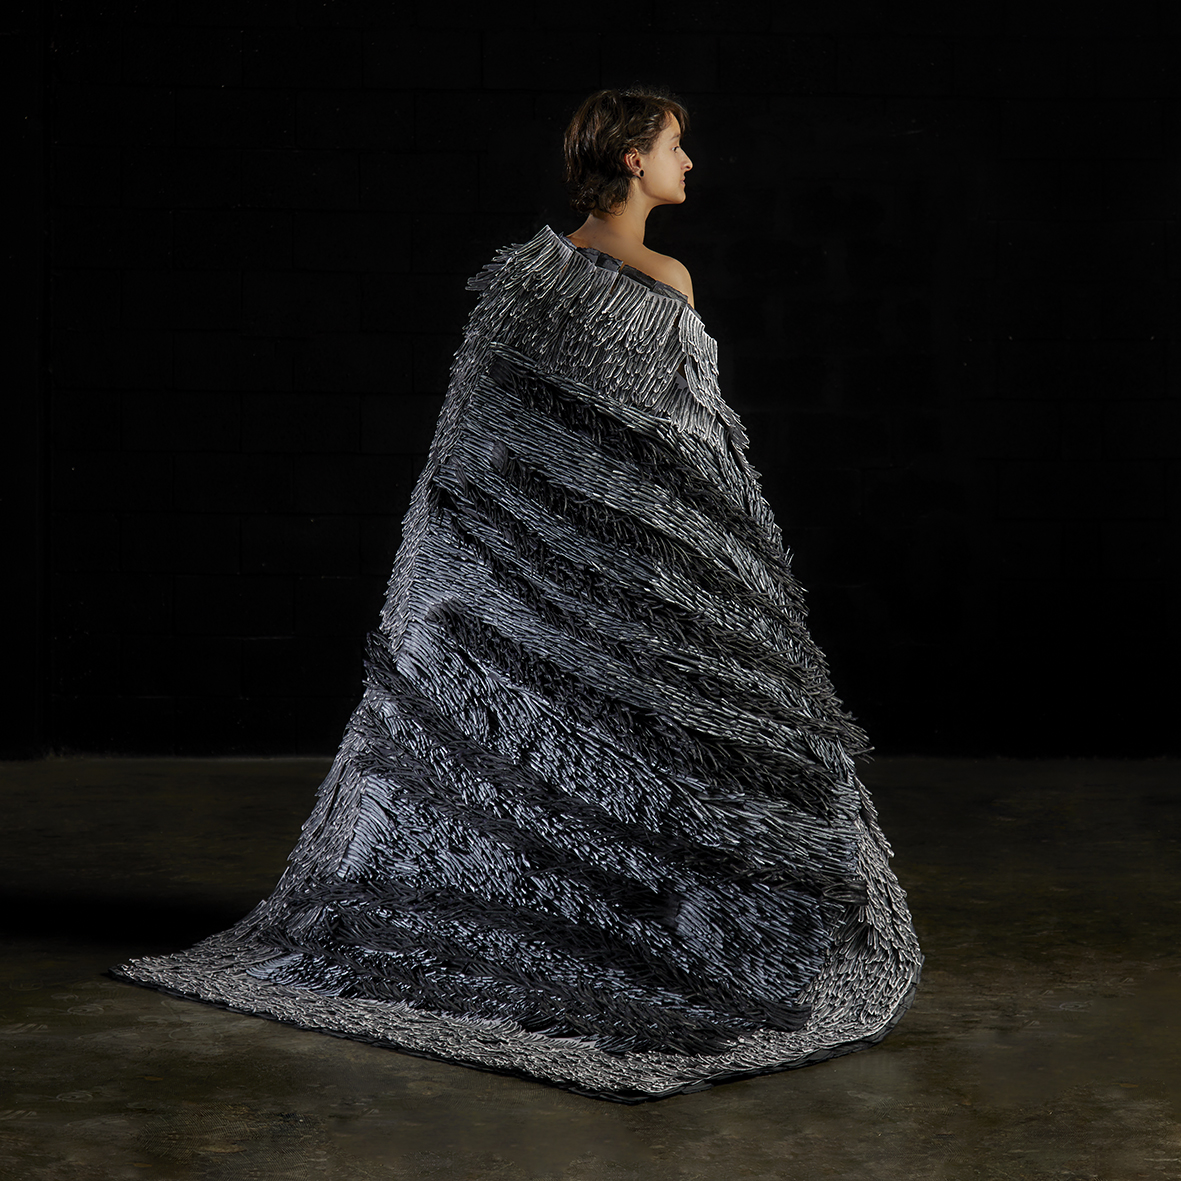 contemporary paper art carpet, contemporary paper artist Bianca Severijns